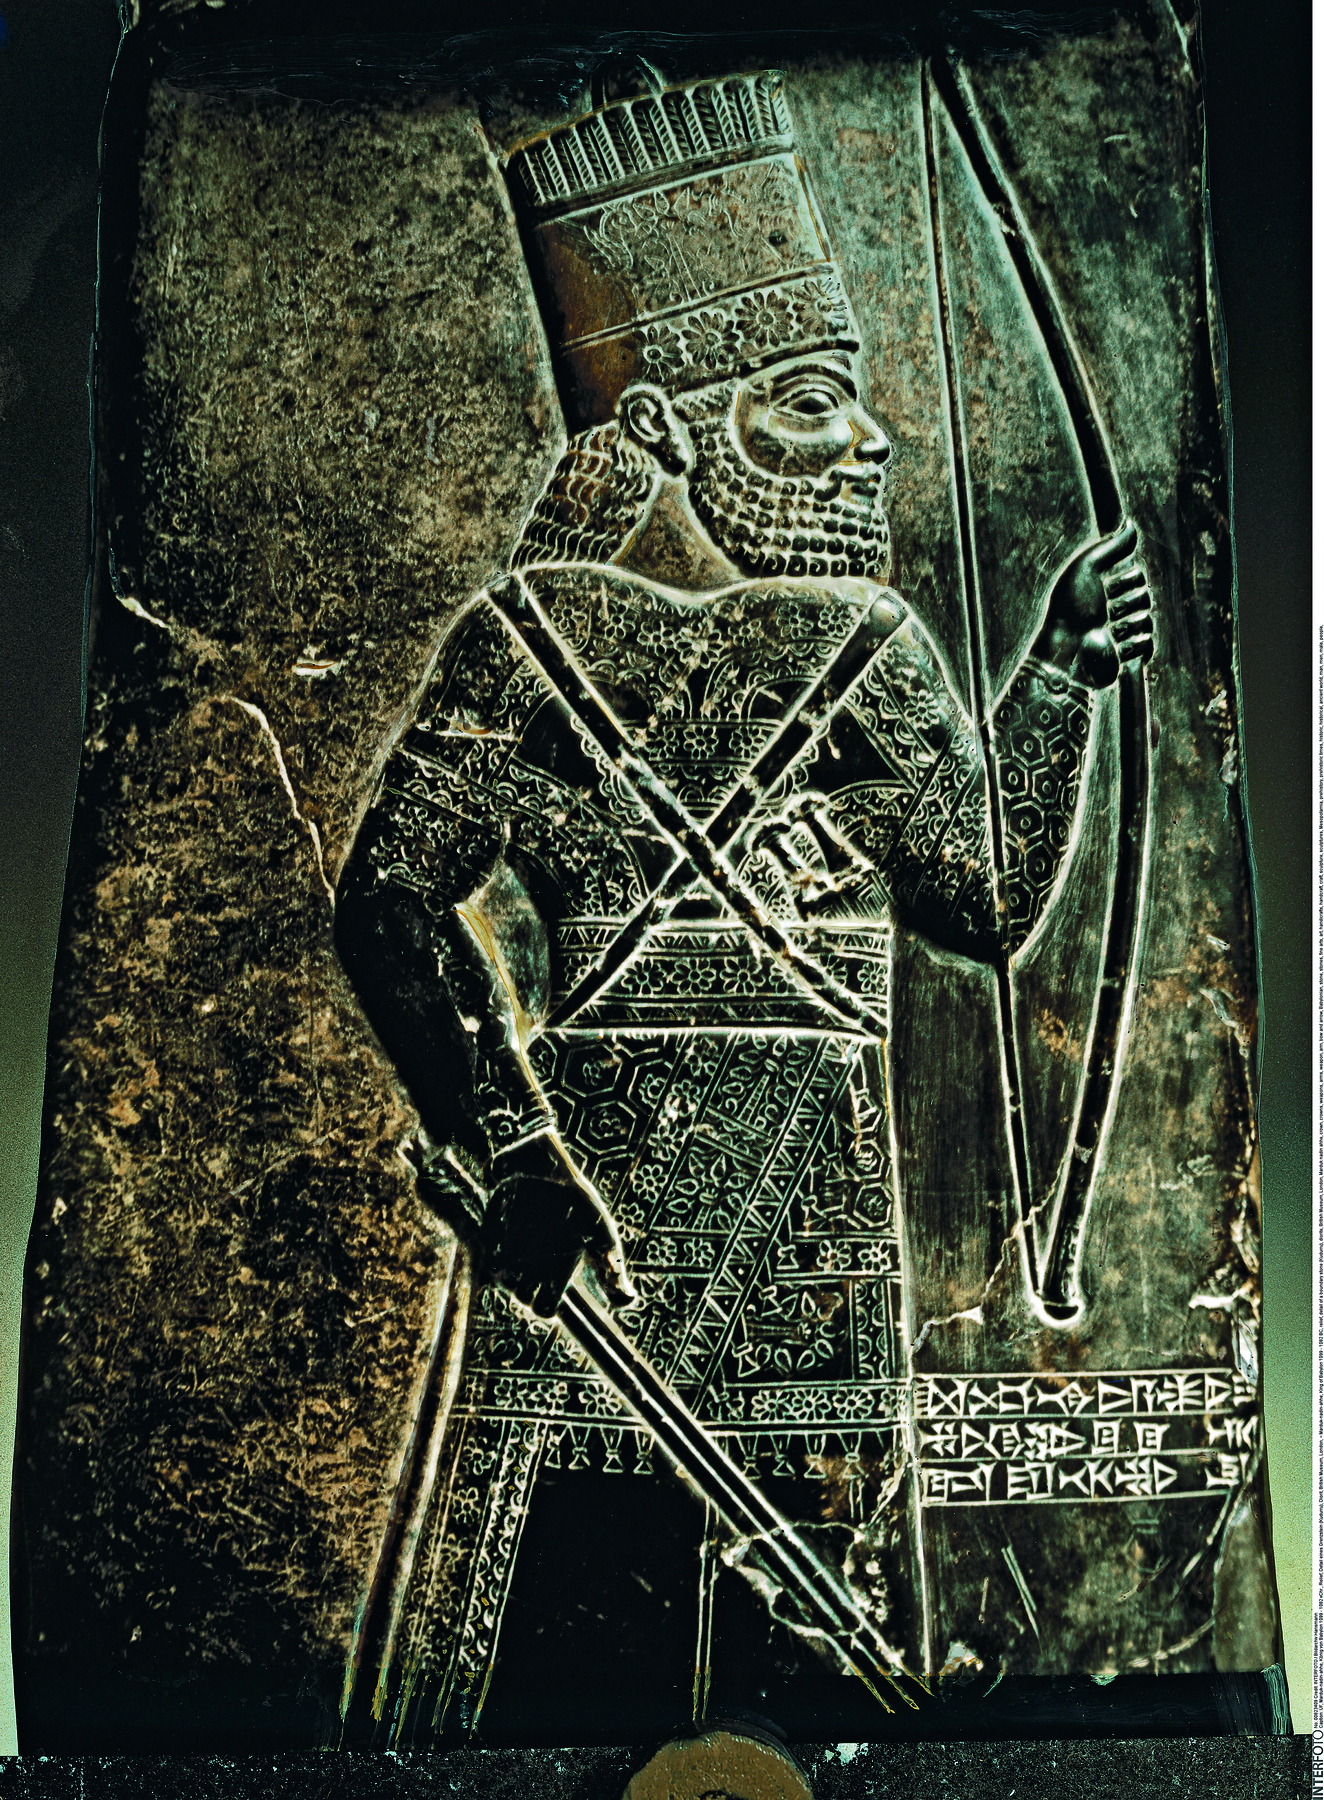 Baixo-relevo. Placa de pedra escura, com a imagem de um homem vestindo uma armadura e um chapéu comprido, visto de perfil, segurando um arco e uma flecha.